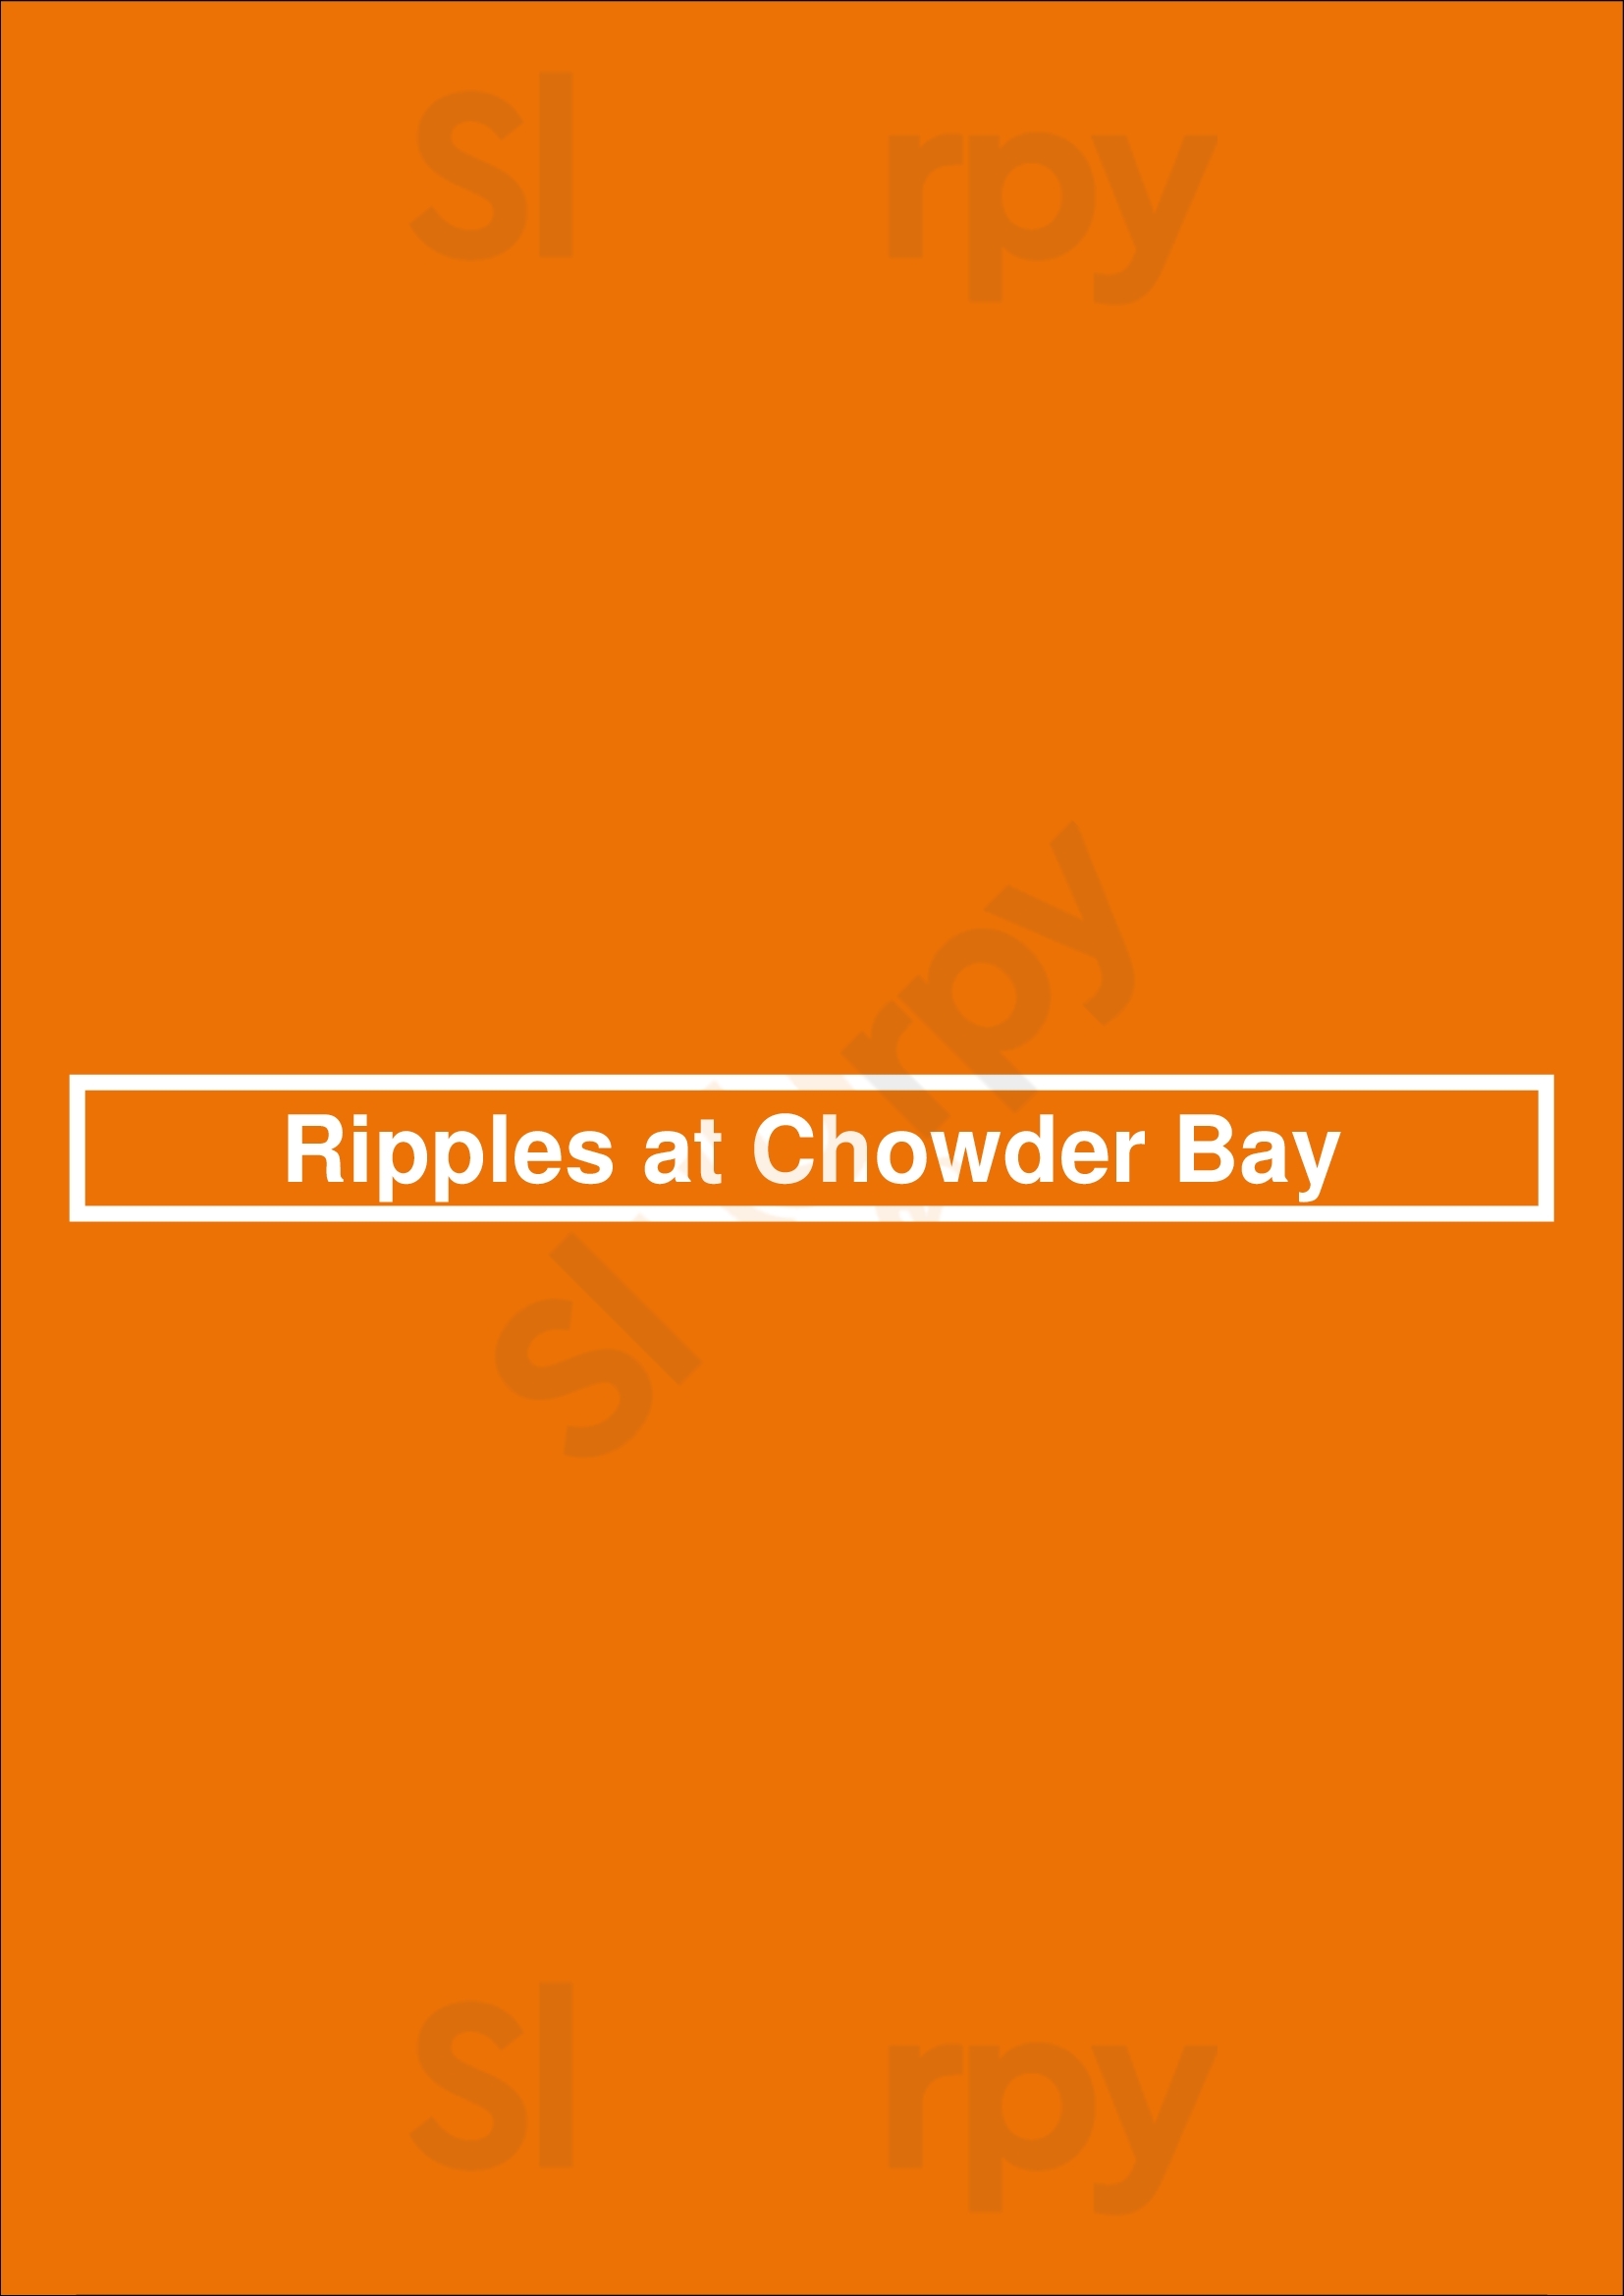 Ripples At Chowder Bay Mosman Menu - 1